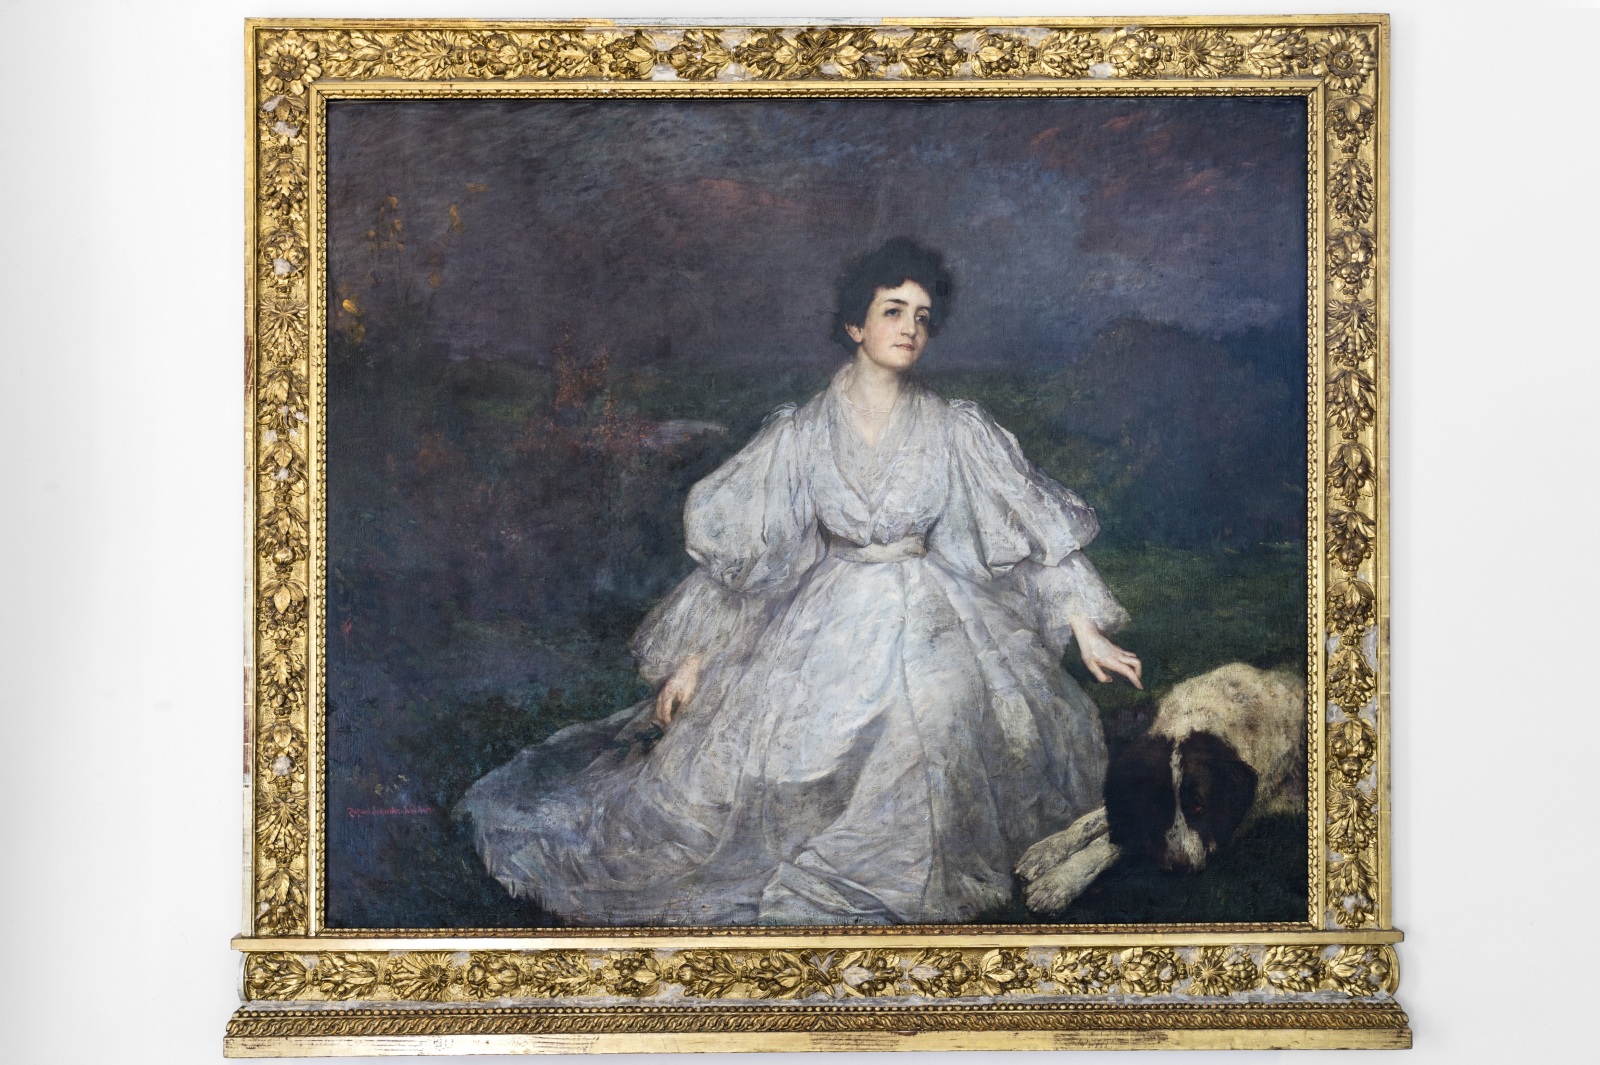 Das Gemälde zeigt Clara Rosenthal als Ganzfigur in einem weißen Kleid auf einer Wiese vor dunkelblau bis violettem Himmel sitzend. Neben ihr liegt ein Bernhardiener mit schwarz-weißen Fell.